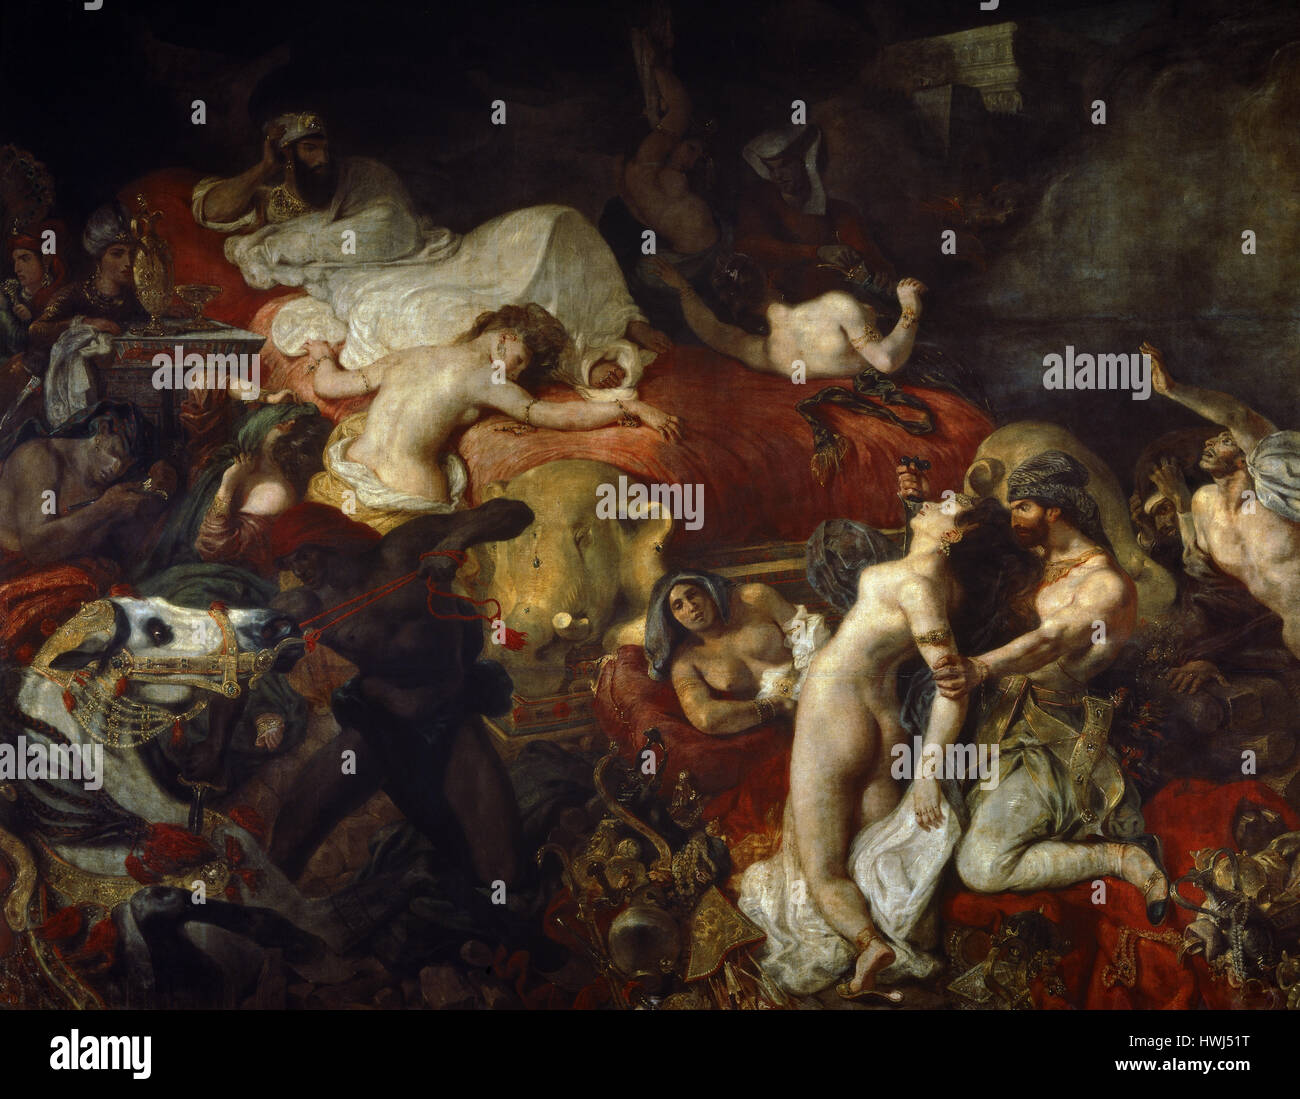 Eugène Delacroix (1798-1863). Französische romantische Künstler. Der Tod des Sardanapal, 1827. Öl auf Leinwand. Louvre-Museum. Paris. Frankreich. Stockfoto